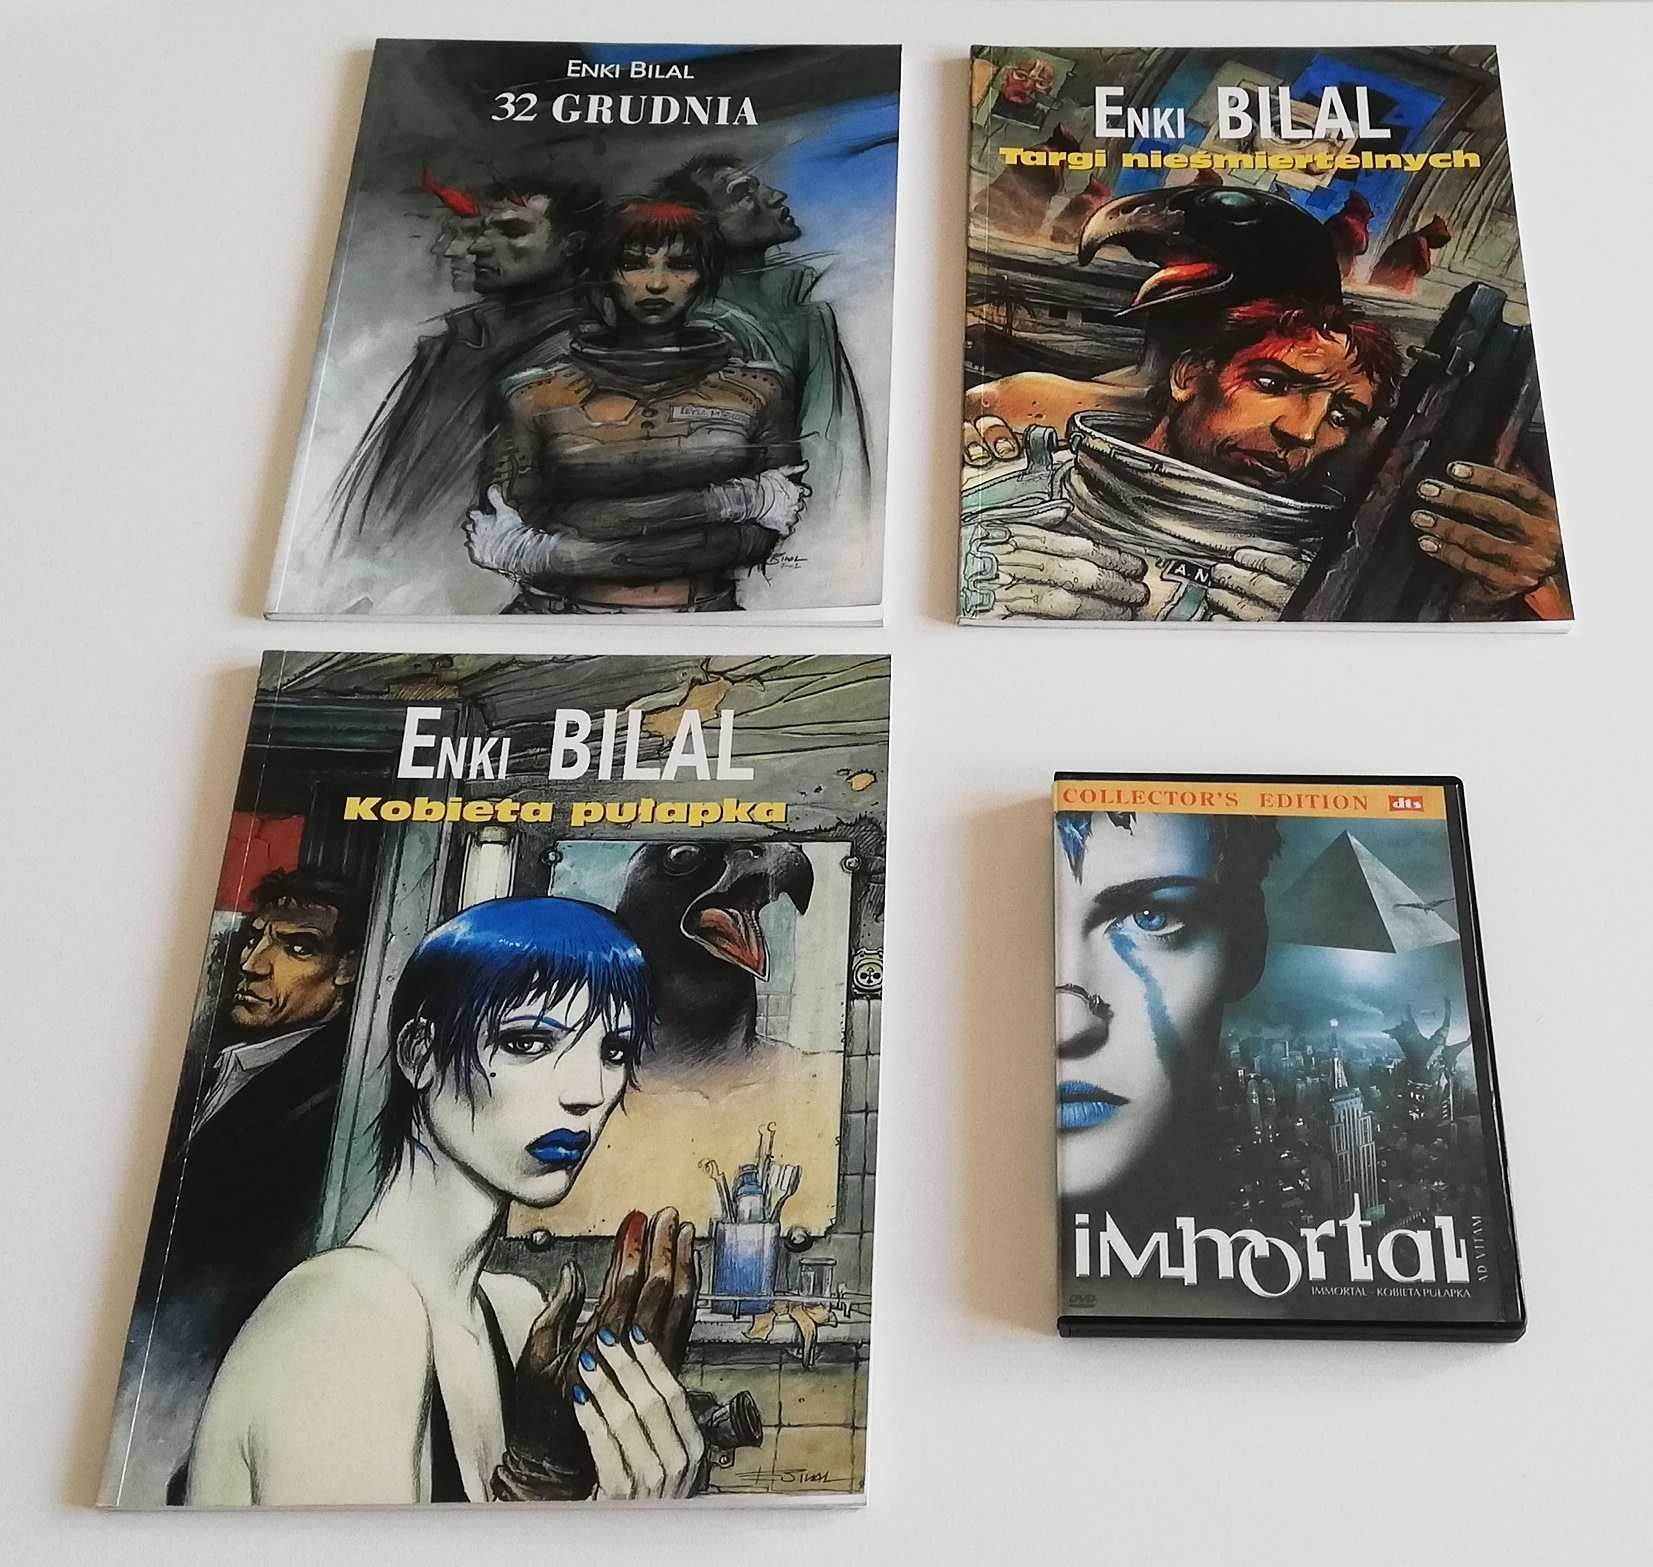 Enki Bilal, 3 x komiks plus film DVD "Immortal", pierwsze pl wydania